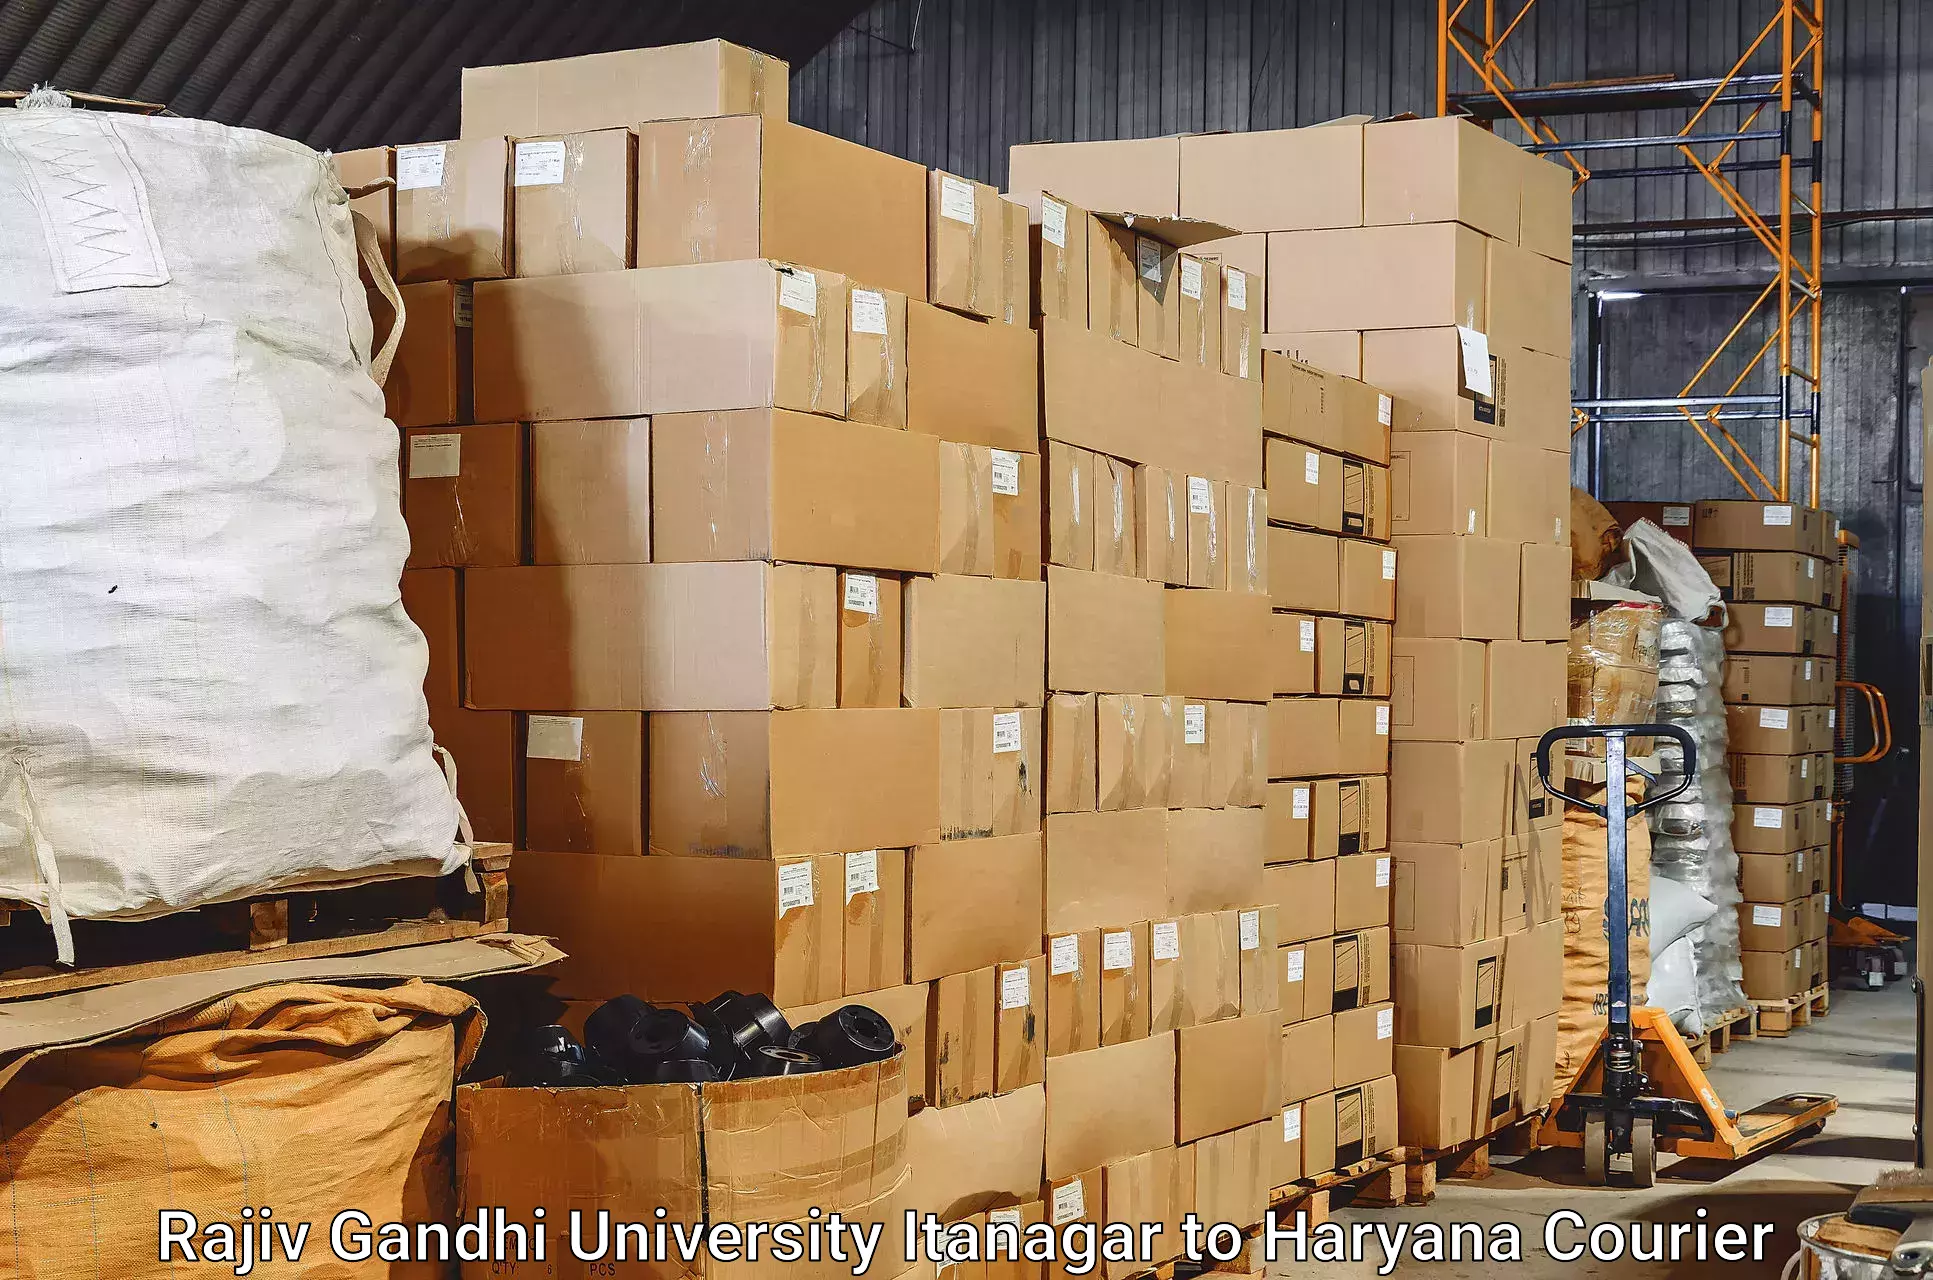 Baggage shipping calculator Rajiv Gandhi University Itanagar to Chaudhary Charan Singh Haryana Agricultural University Hisar